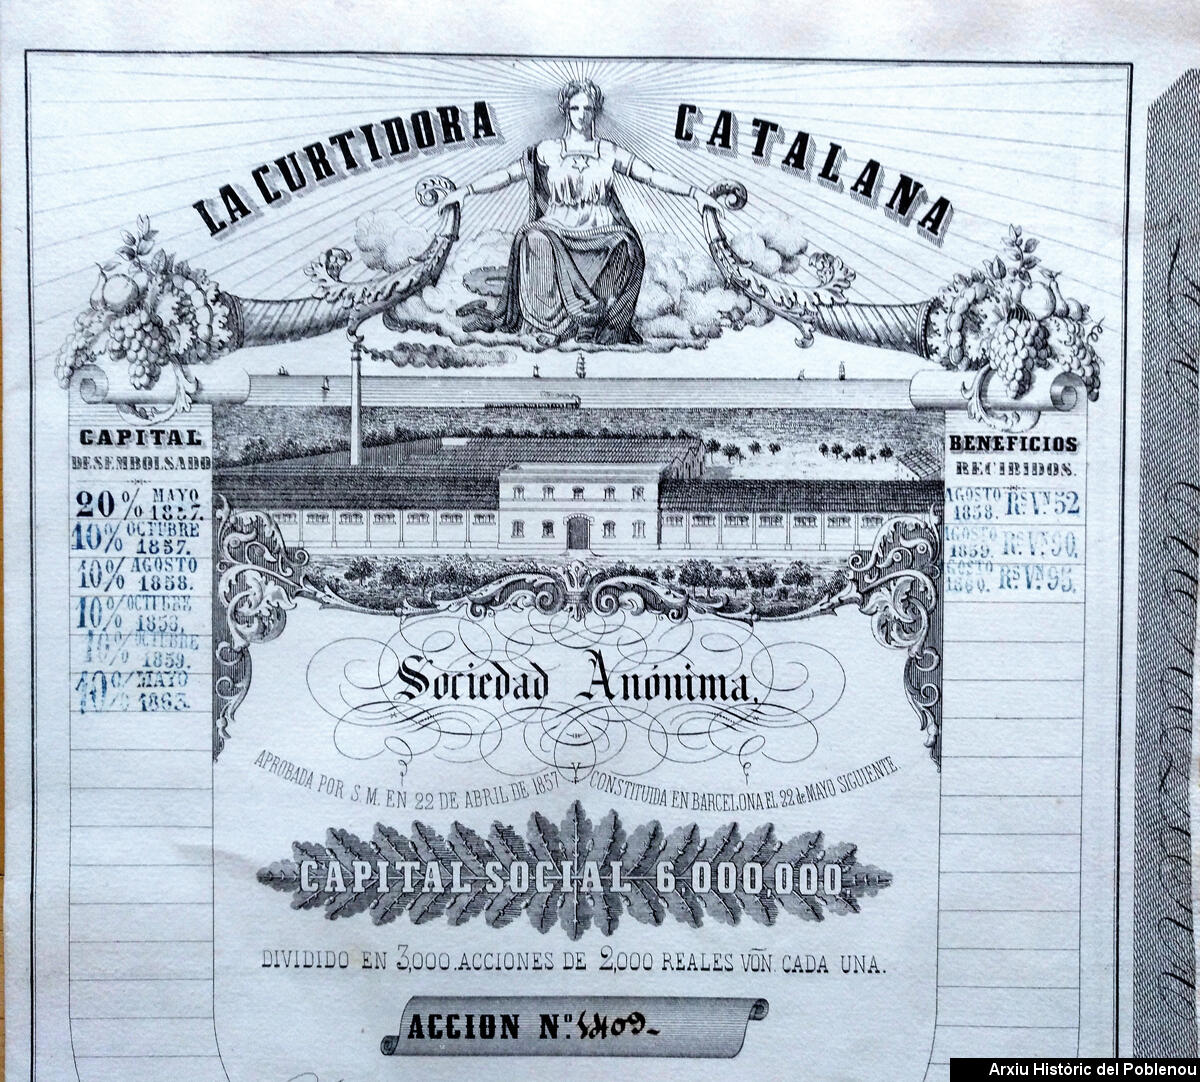 21976 Curtidora Catalana 1857